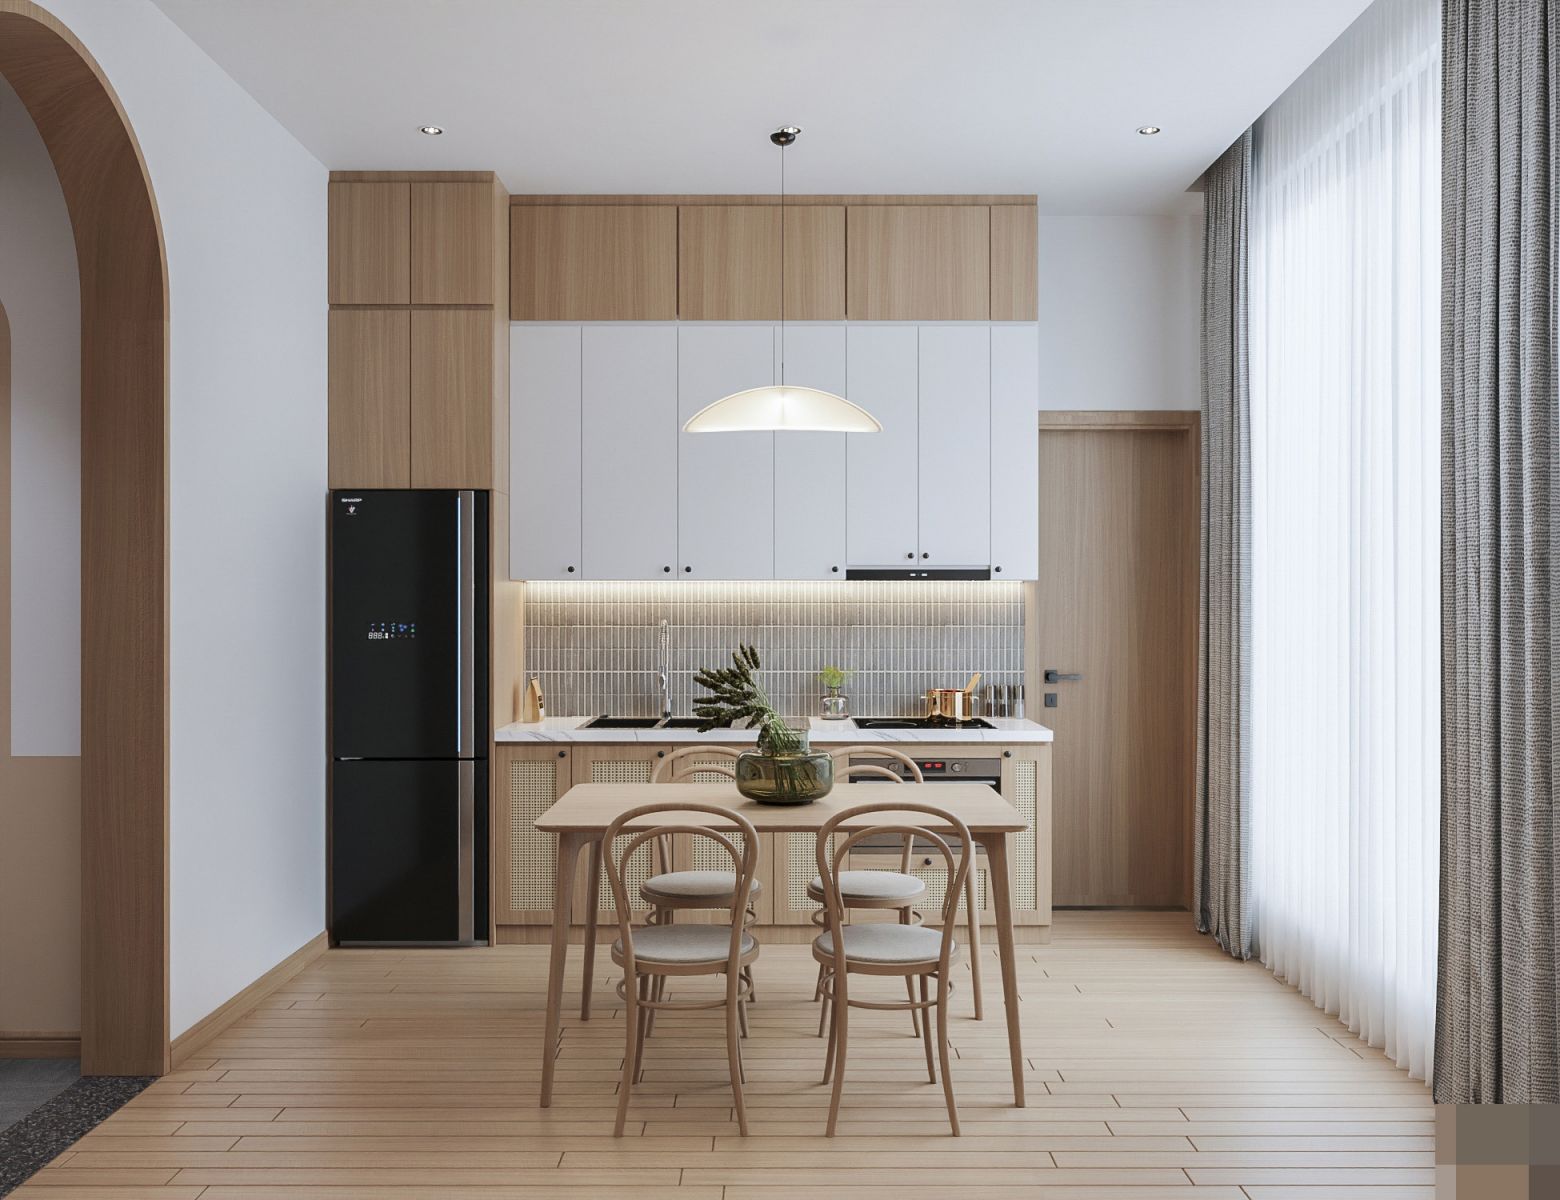 Cải tạo căn hộ kiểu Nhật tận dụng tối đa diện tích, không gian đầy tiện nghi